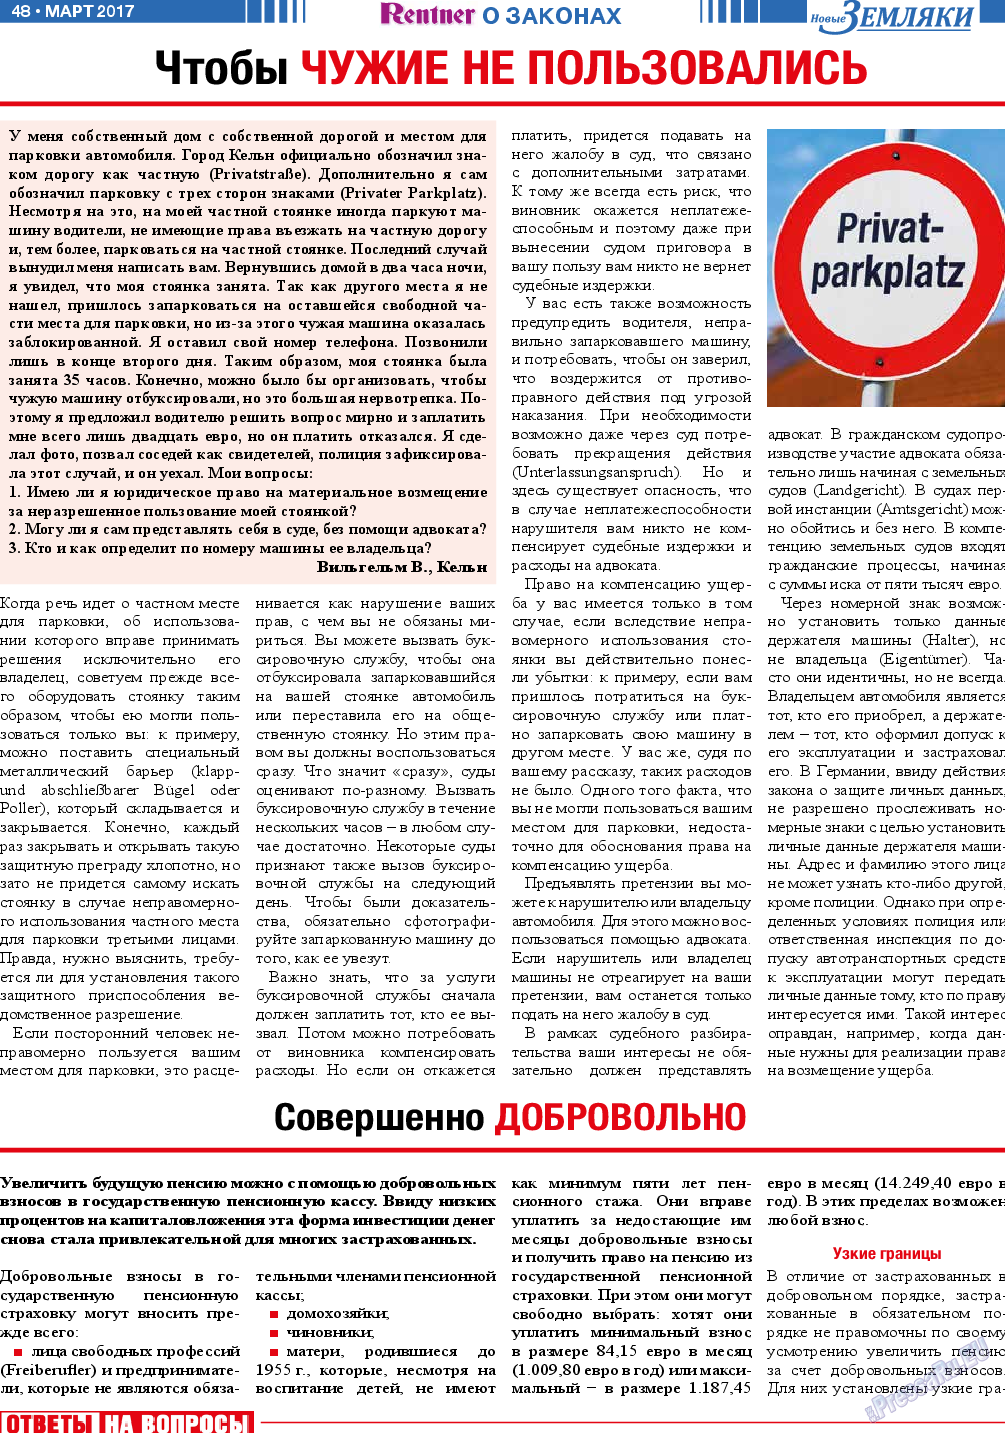 Новые Земляки, газета. 2017 №3 стр.48